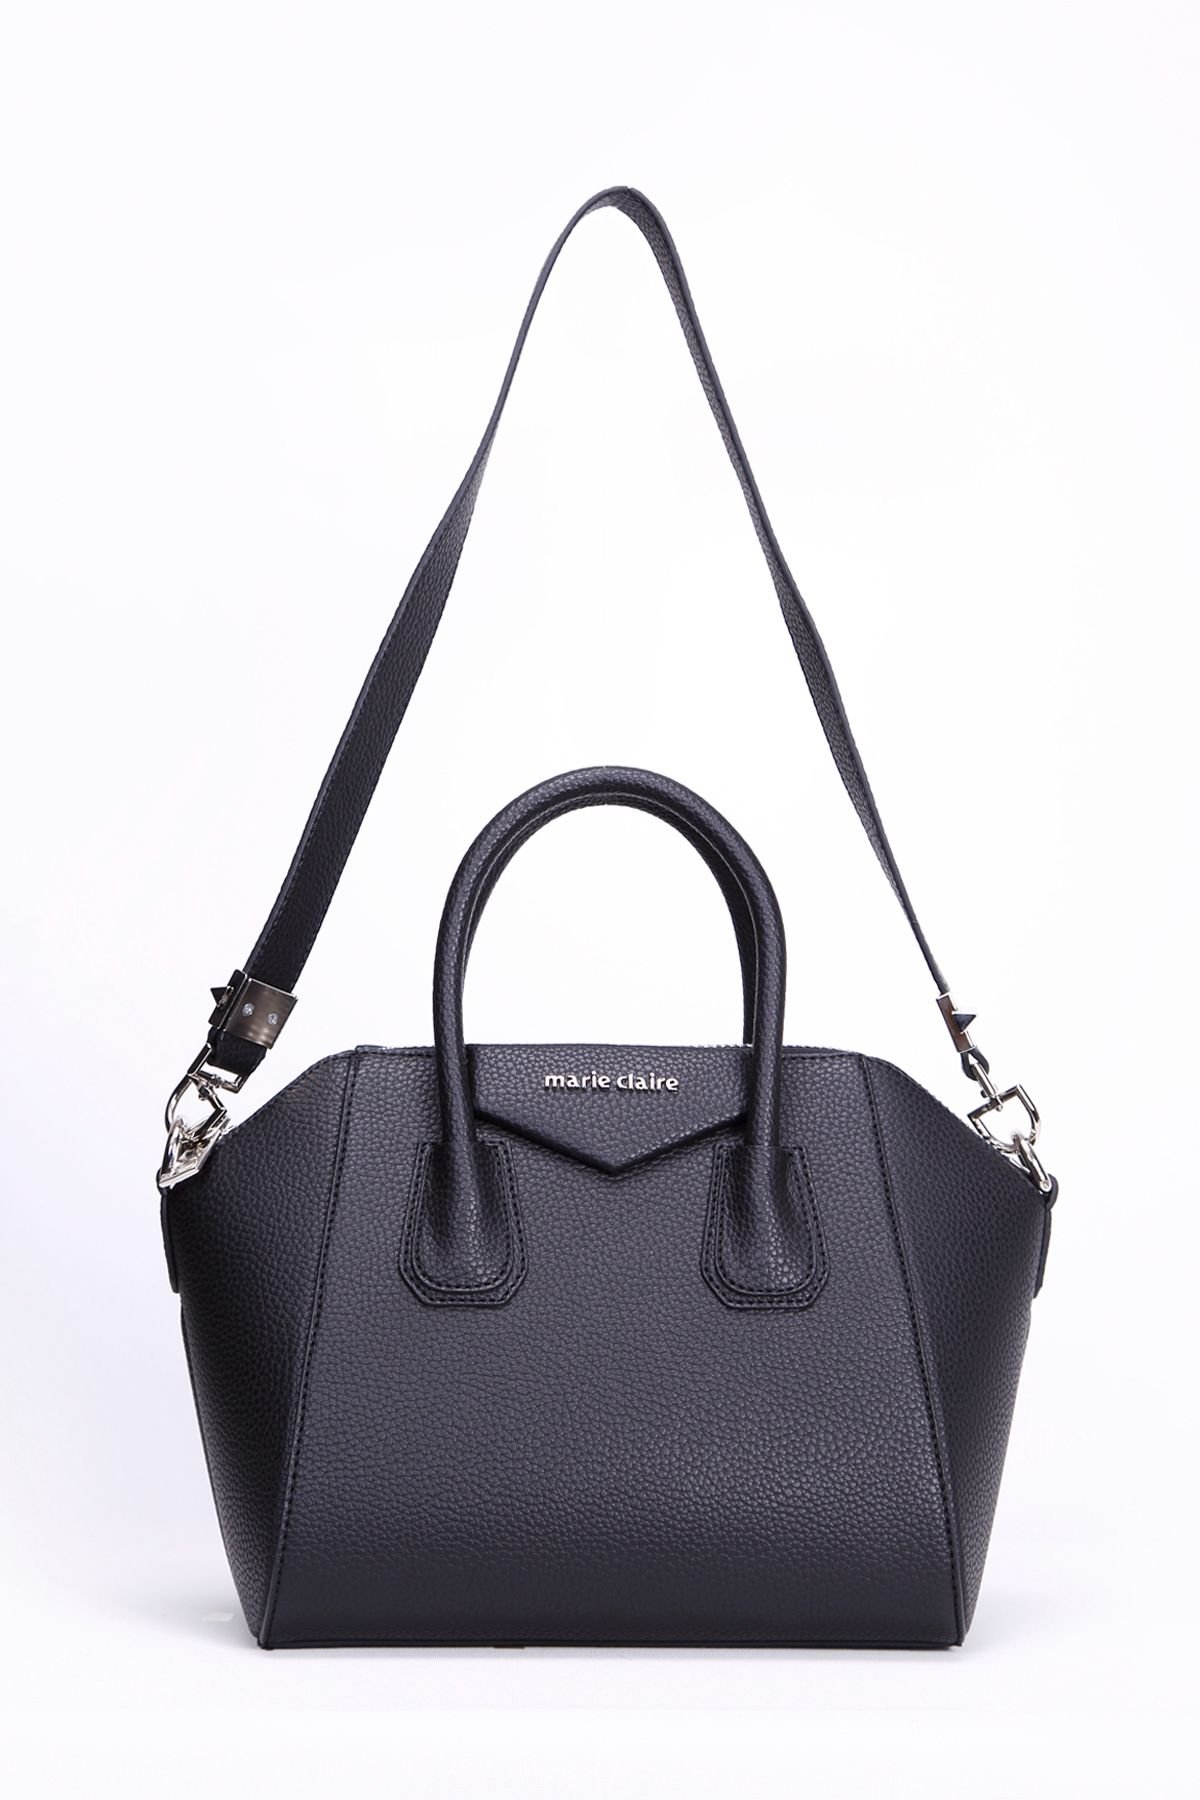 Marie Claire Black Women Shoulder Bag Carmen MC212101117